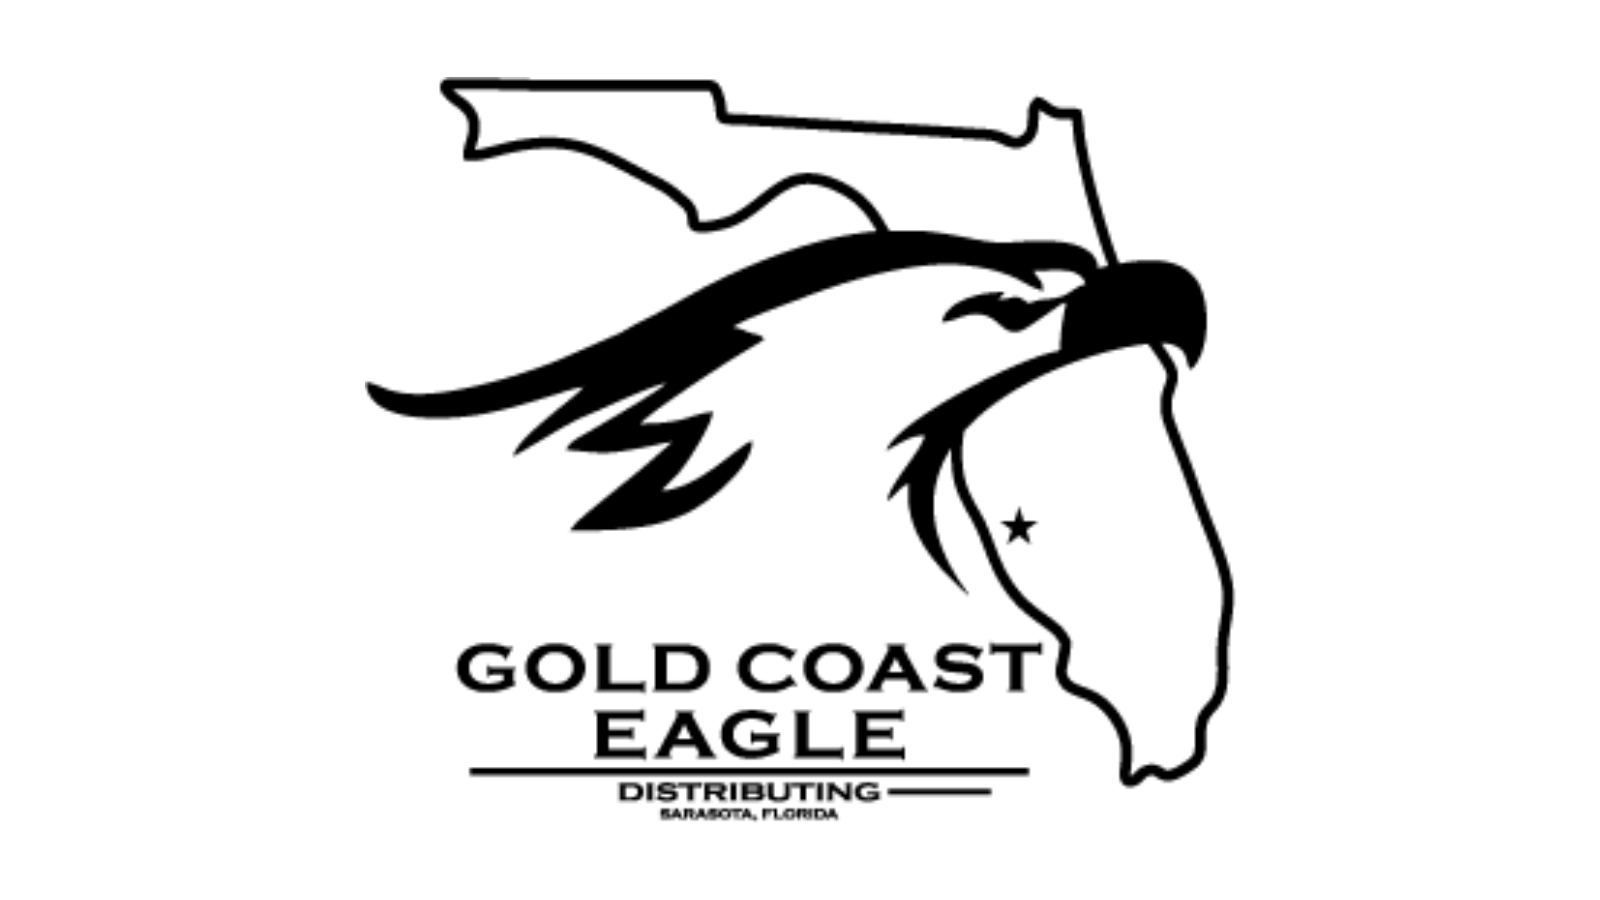 Gold Coast Eagle Distributing